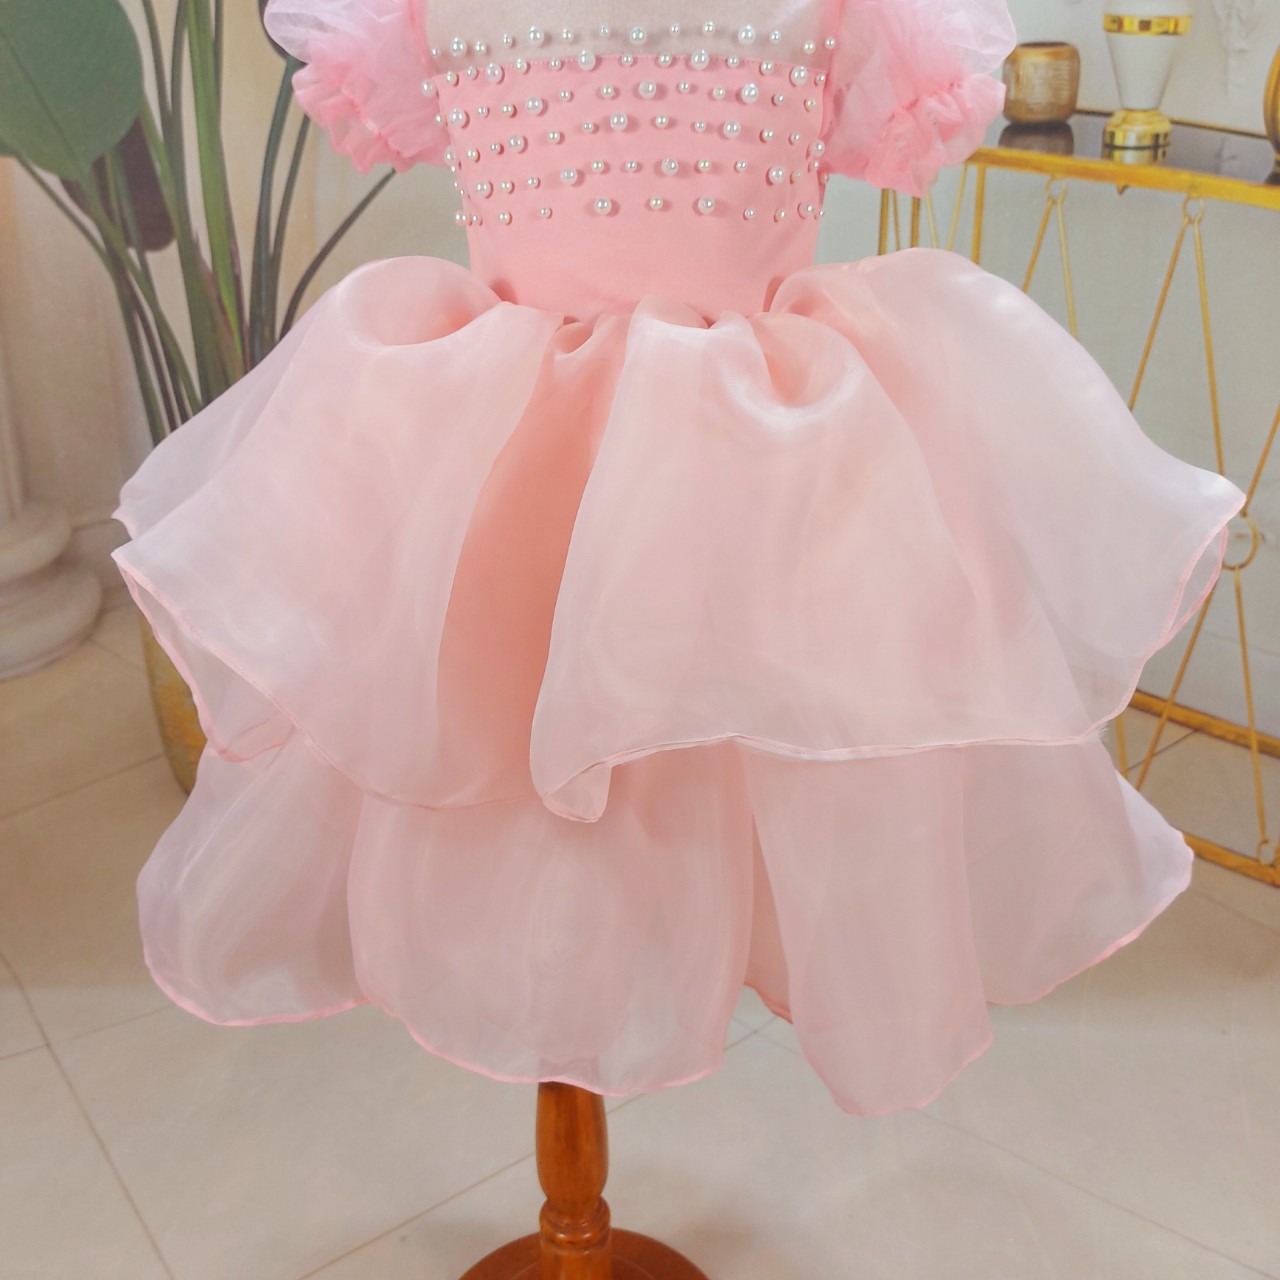 Váy đầm công chúa hồng baby cho bé